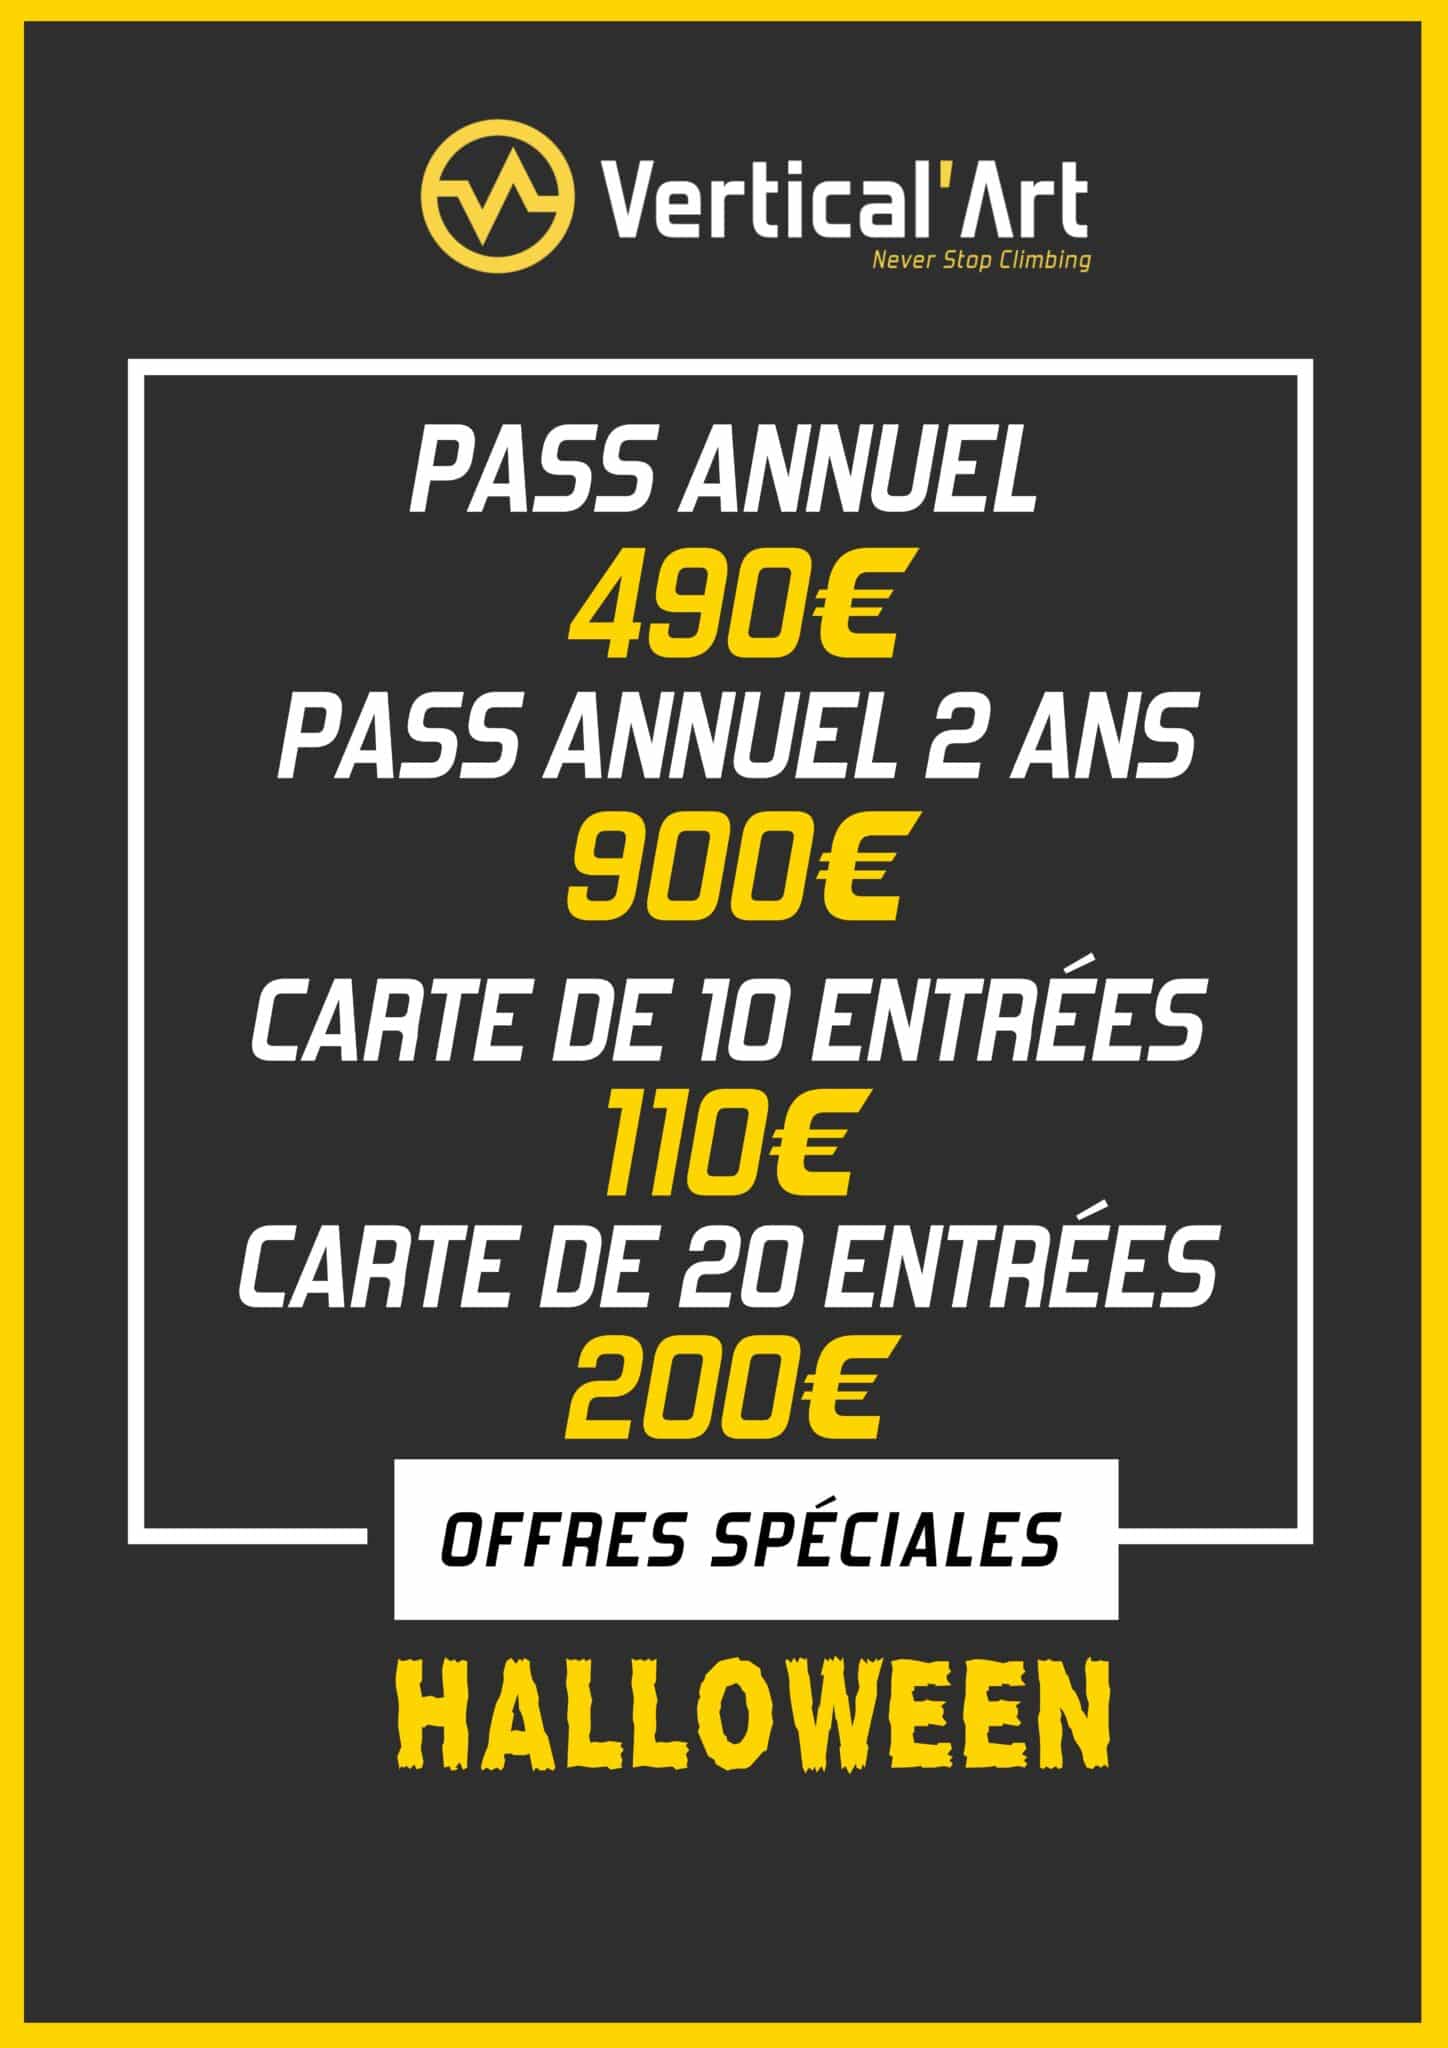 Offres Monstres Halloween à Vertical'Art Paris Chevaleret du 21 au 31 octobre